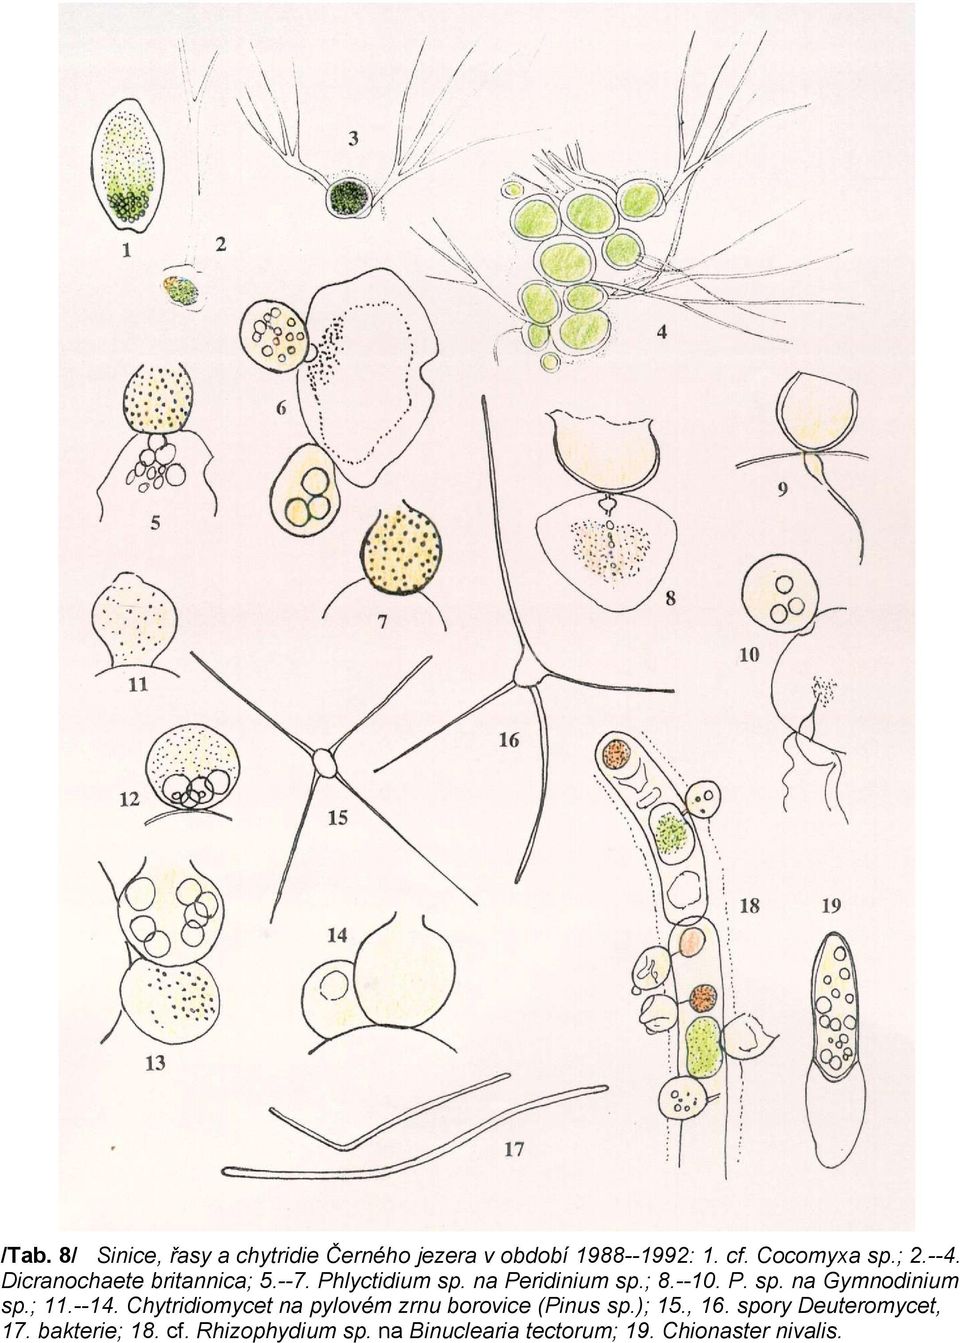 ; 11.--14. Chytridiomycet na pylovém zrnu borovice (Pinus sp.); 15., 16.